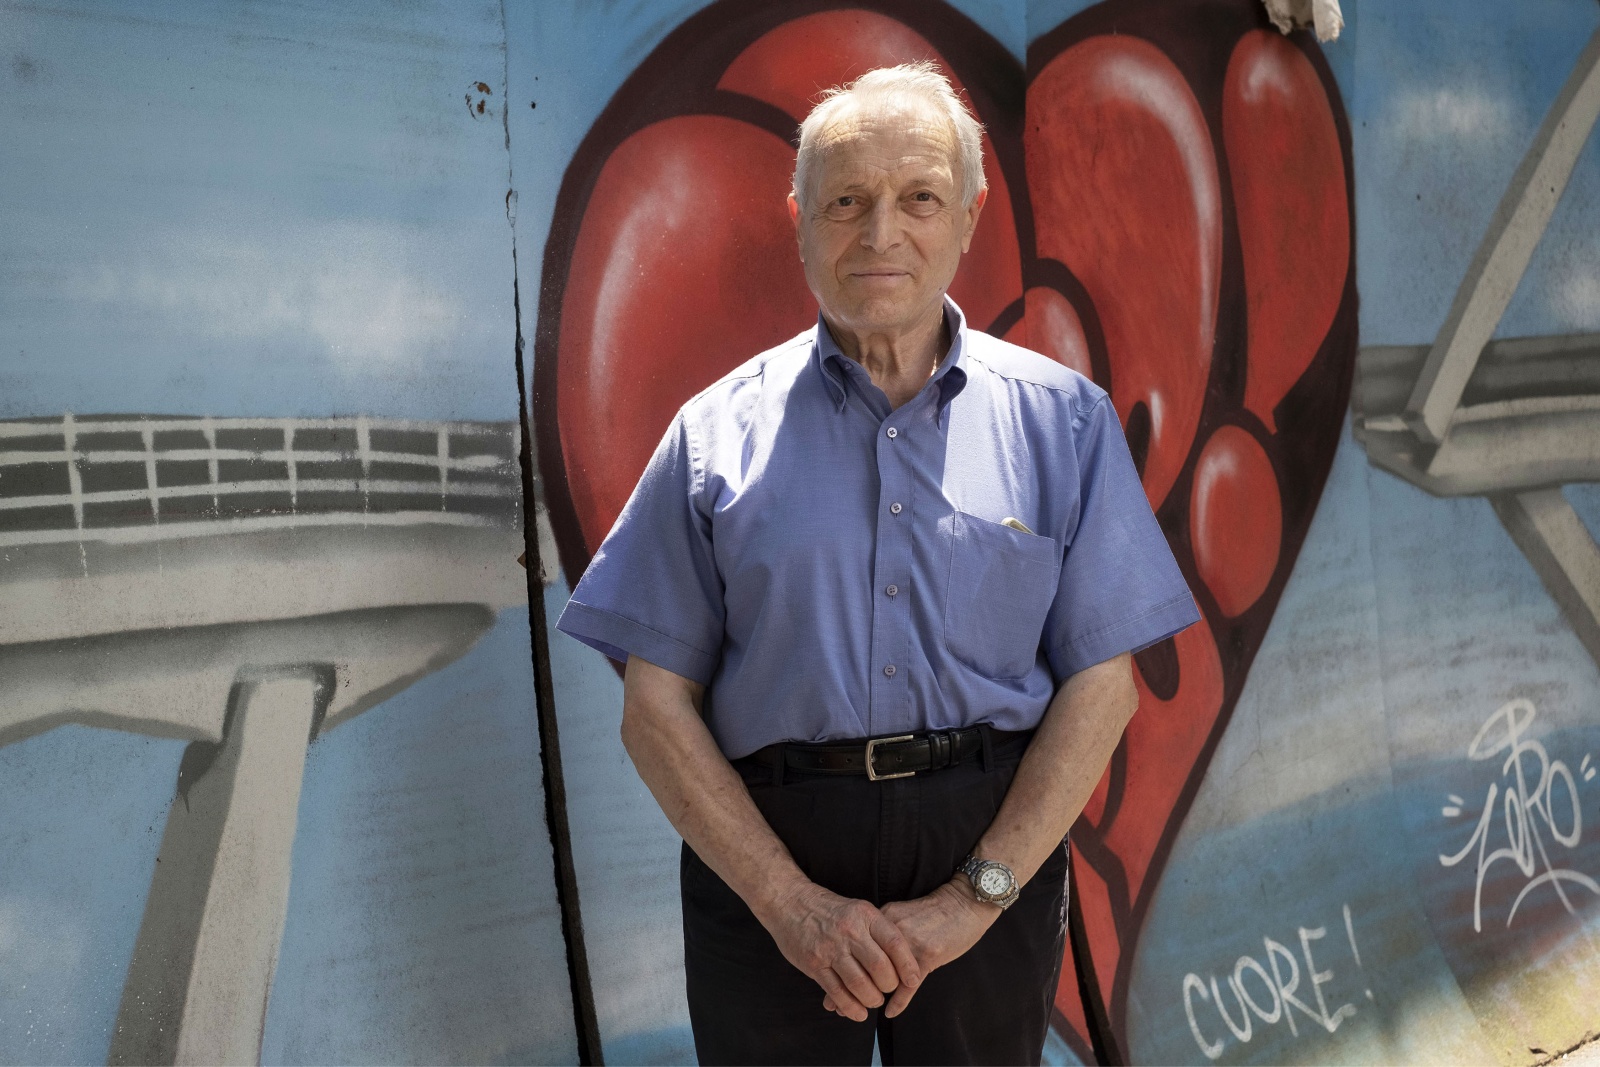 Genova, Gherardo Ghirardini 83 anni, vive con la moglie in via del Campasso, al di la della ferrovia  nella zona rossa interdetta dopo il crollo del ponte Morandi